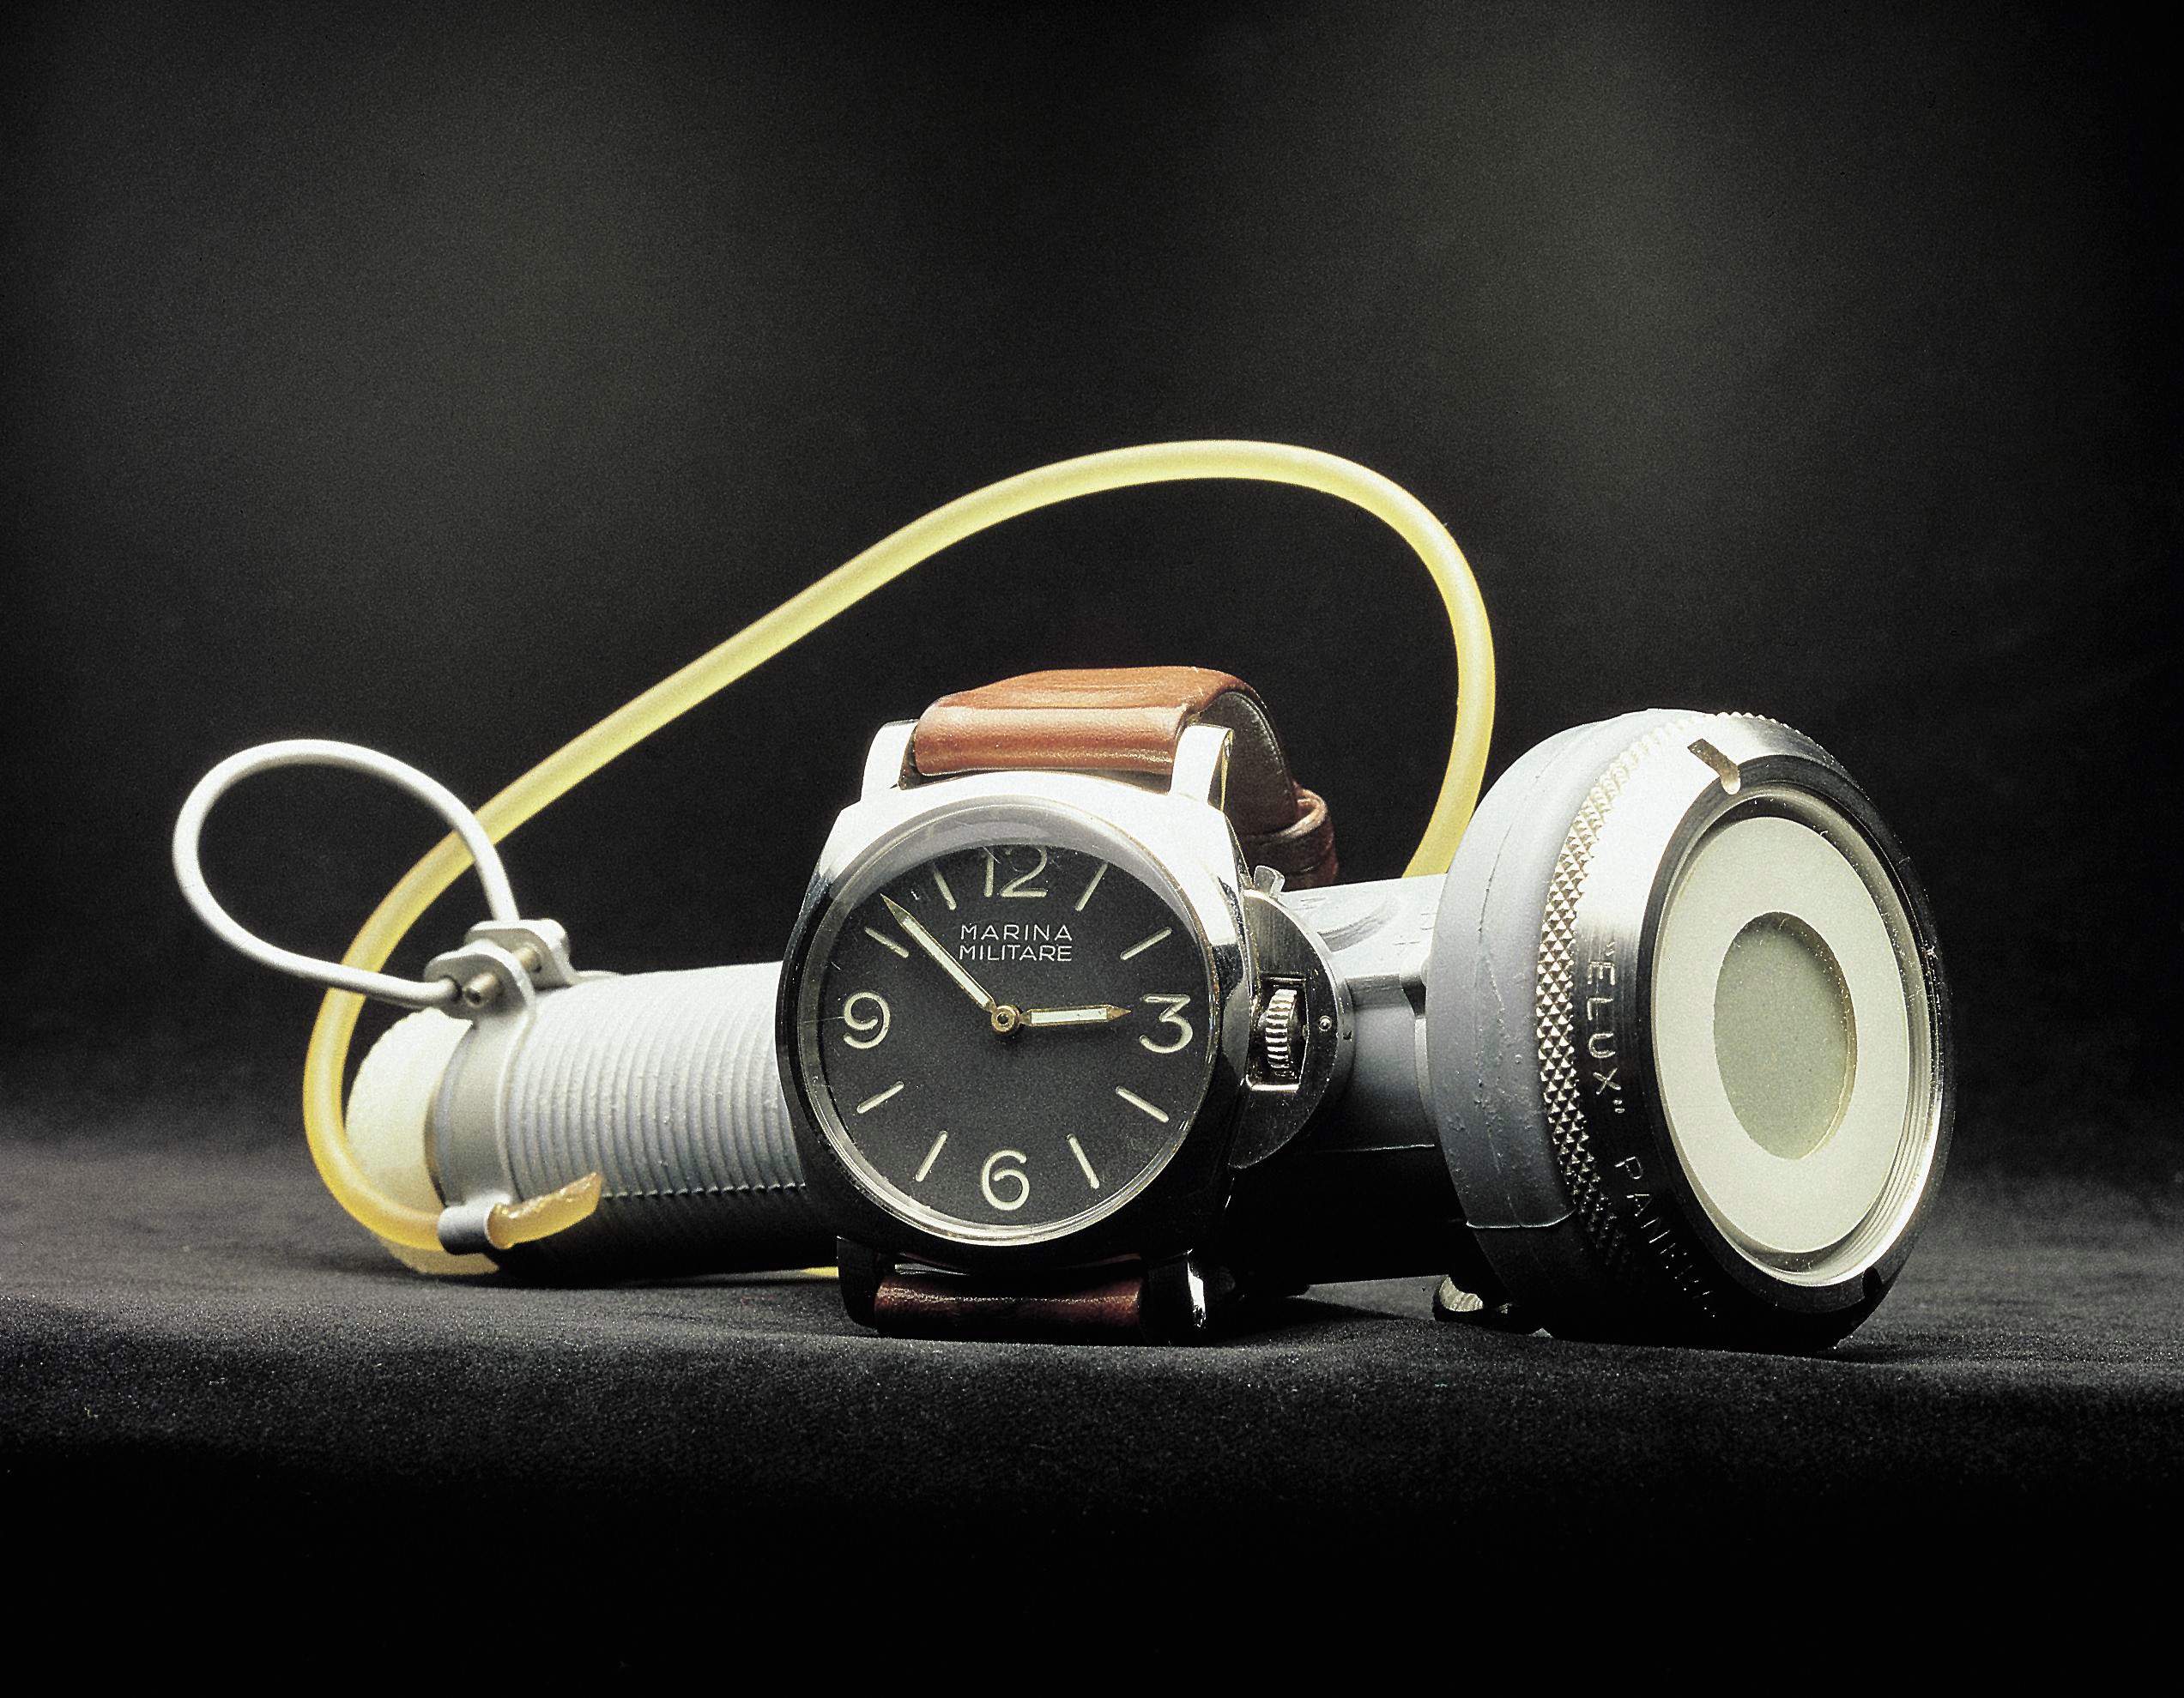 沛納海標誌性護橋設計，用意是以壓力桿保護錶冠在水下不受影響而進水，可說是水下作業用錶的頂級裝備。Luminor 取名來自於夜光物料「氚」，是為「氫」同位素，取代 Radiomir 系列的「鐳」作為夜光塗料，並延續 Radiomir 1940 的寬廣扁平枕型錶殼、一體成型鑄造優點，沛納海在 1949 年註冊為品牌專利後，Luminor 1950 系列腕錶宣告問世。